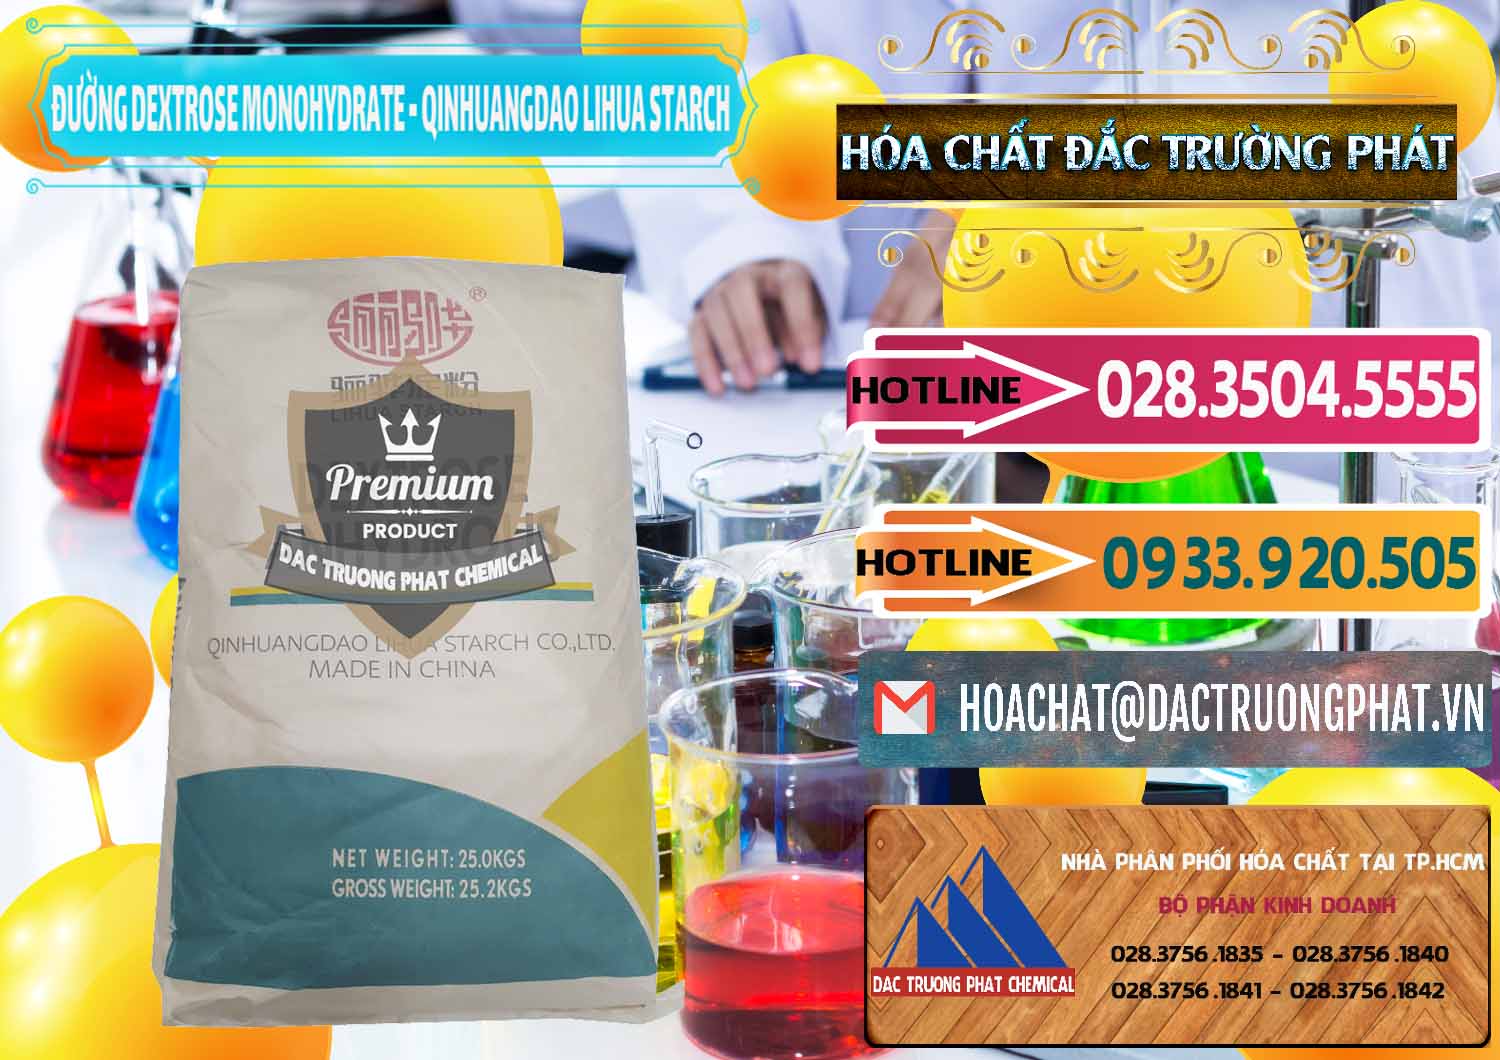 Nơi nhập khẩu & bán Đường Dextrose Monohydrate Food Grade Qinhuangdao Lihua Starch - 0224 - Cung cấp ( nhập khẩu ) hóa chất tại TP.HCM - dactruongphat.vn